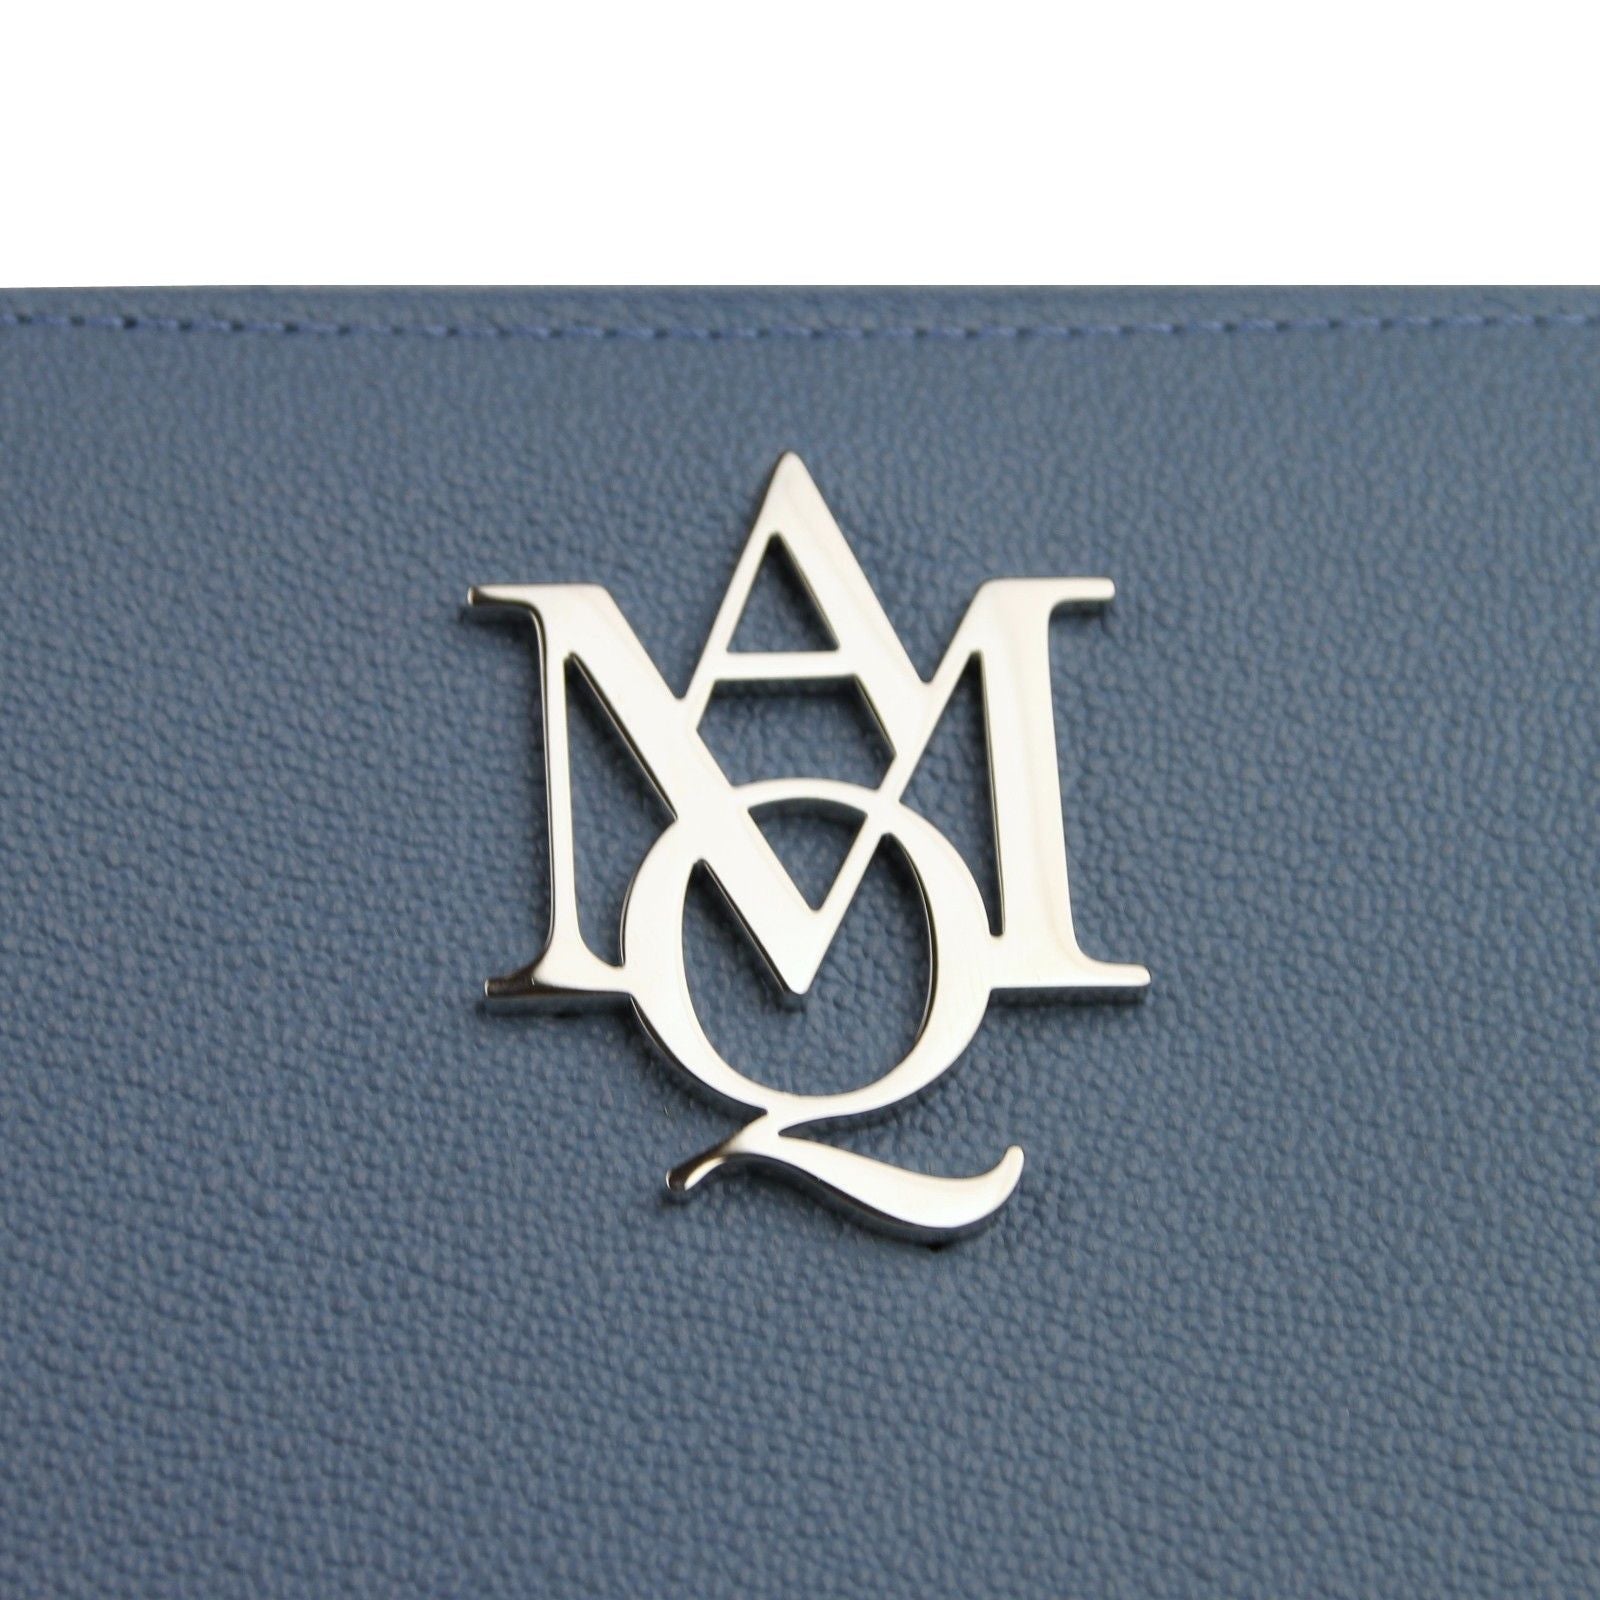 Alexander McQueen Alexander McQueen Women's Gold Logo Blue Leather Zip Around Wallet